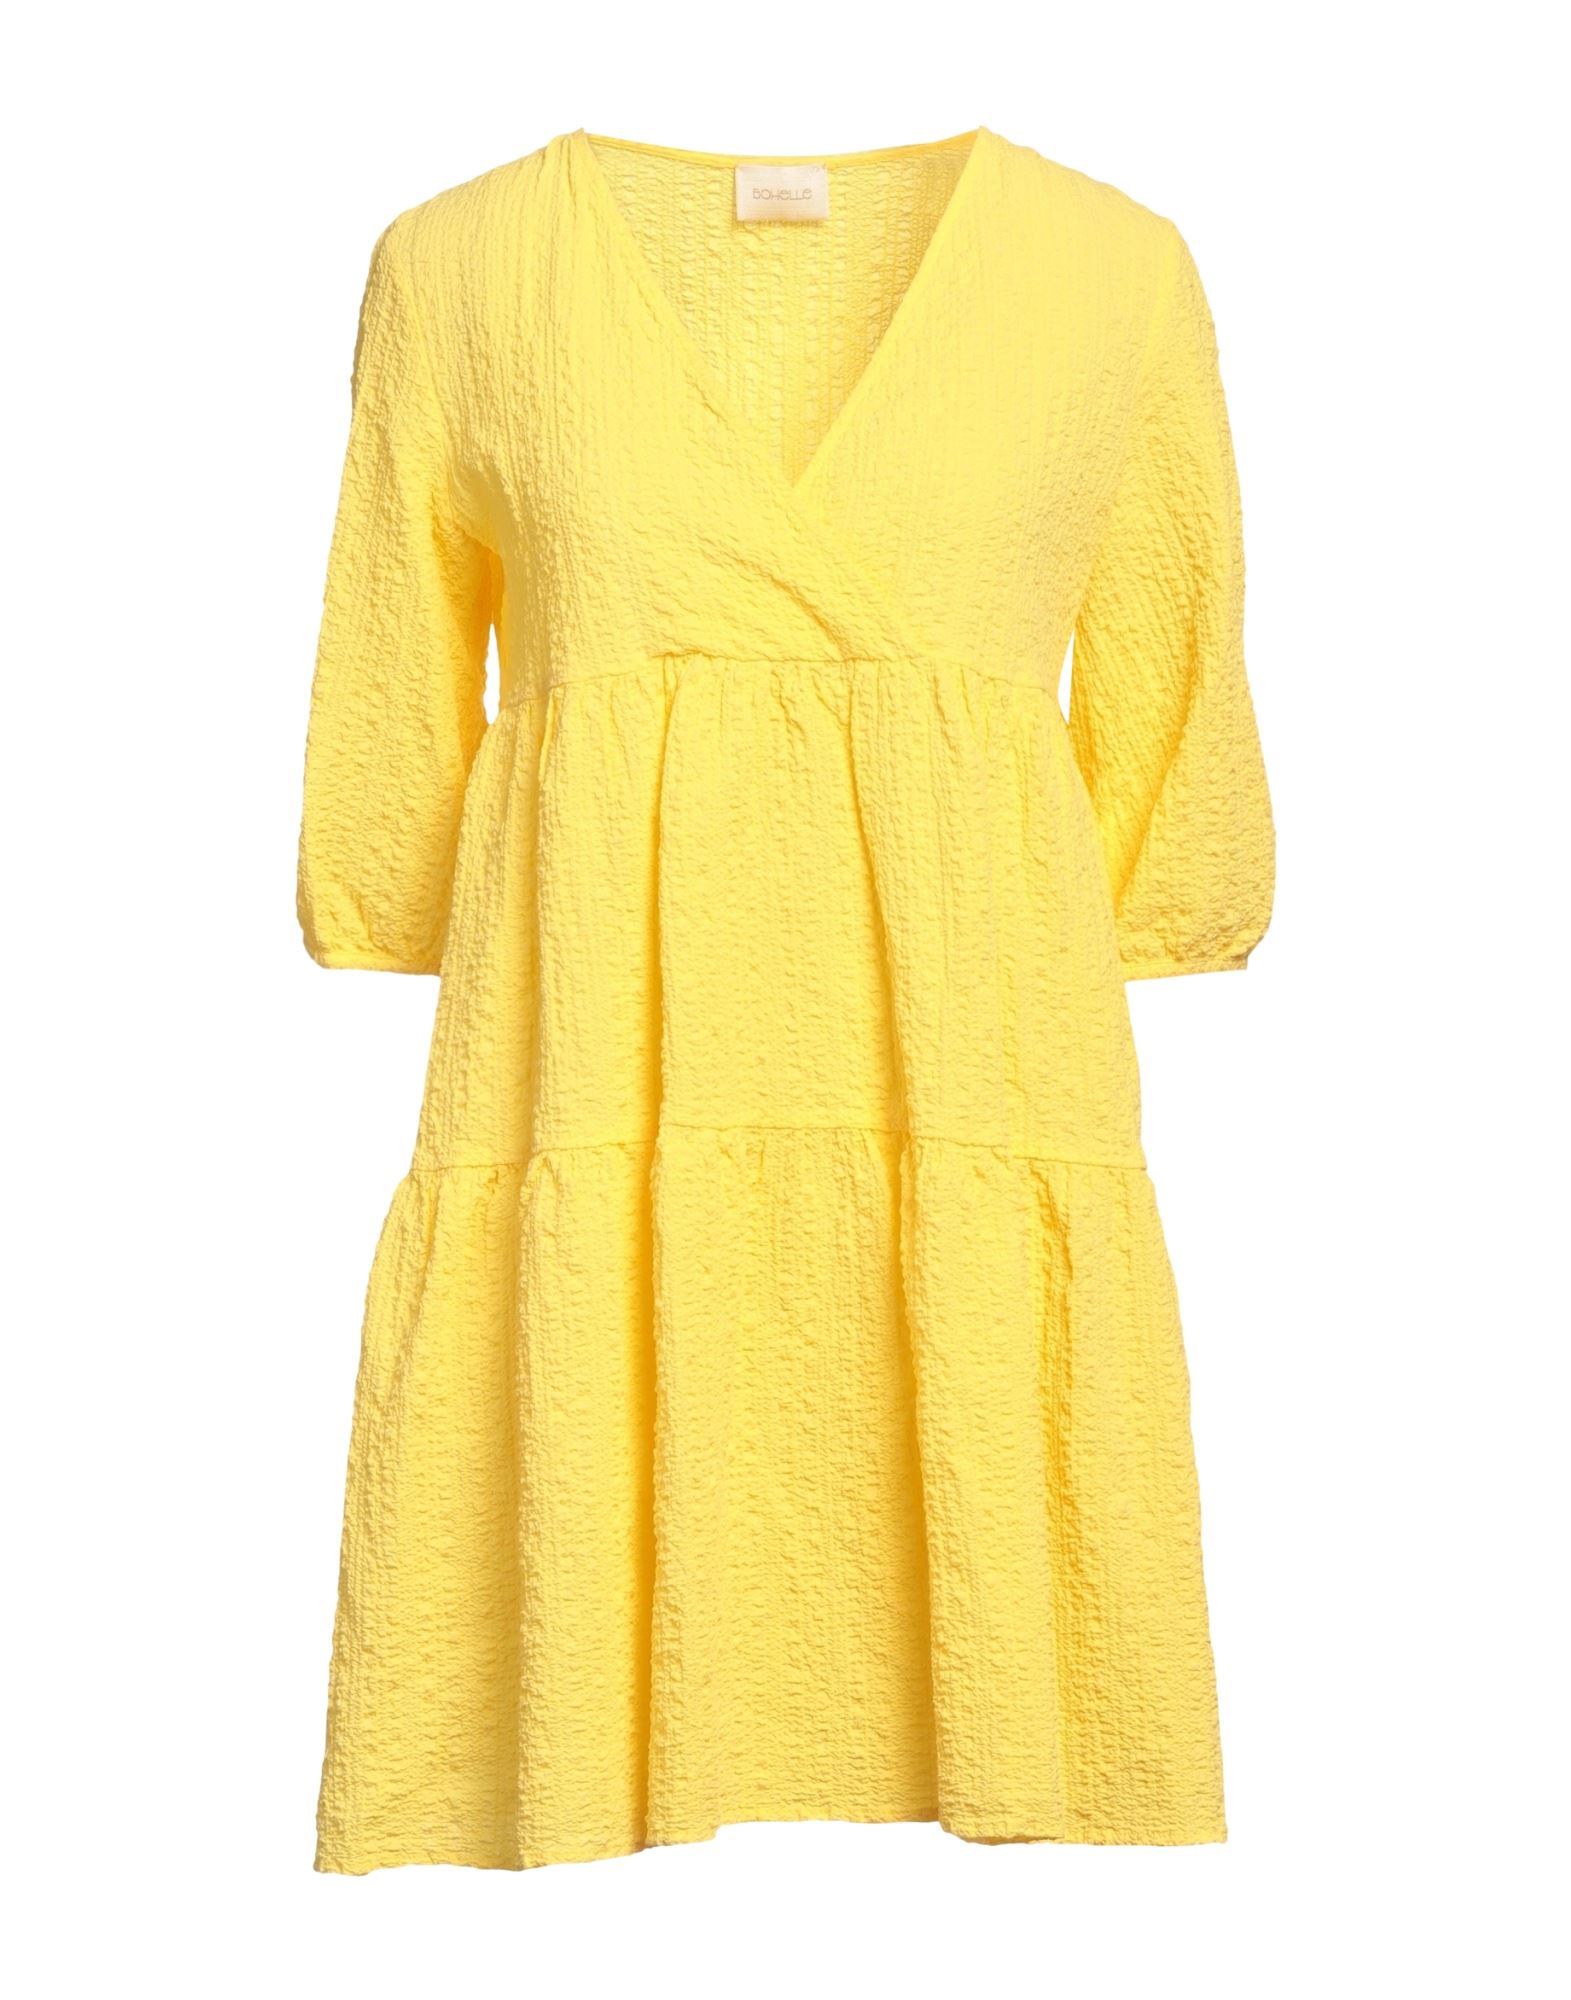 Shop Bohelle Woman Mini Dress Yellow Size 6 Cotton, Elastane